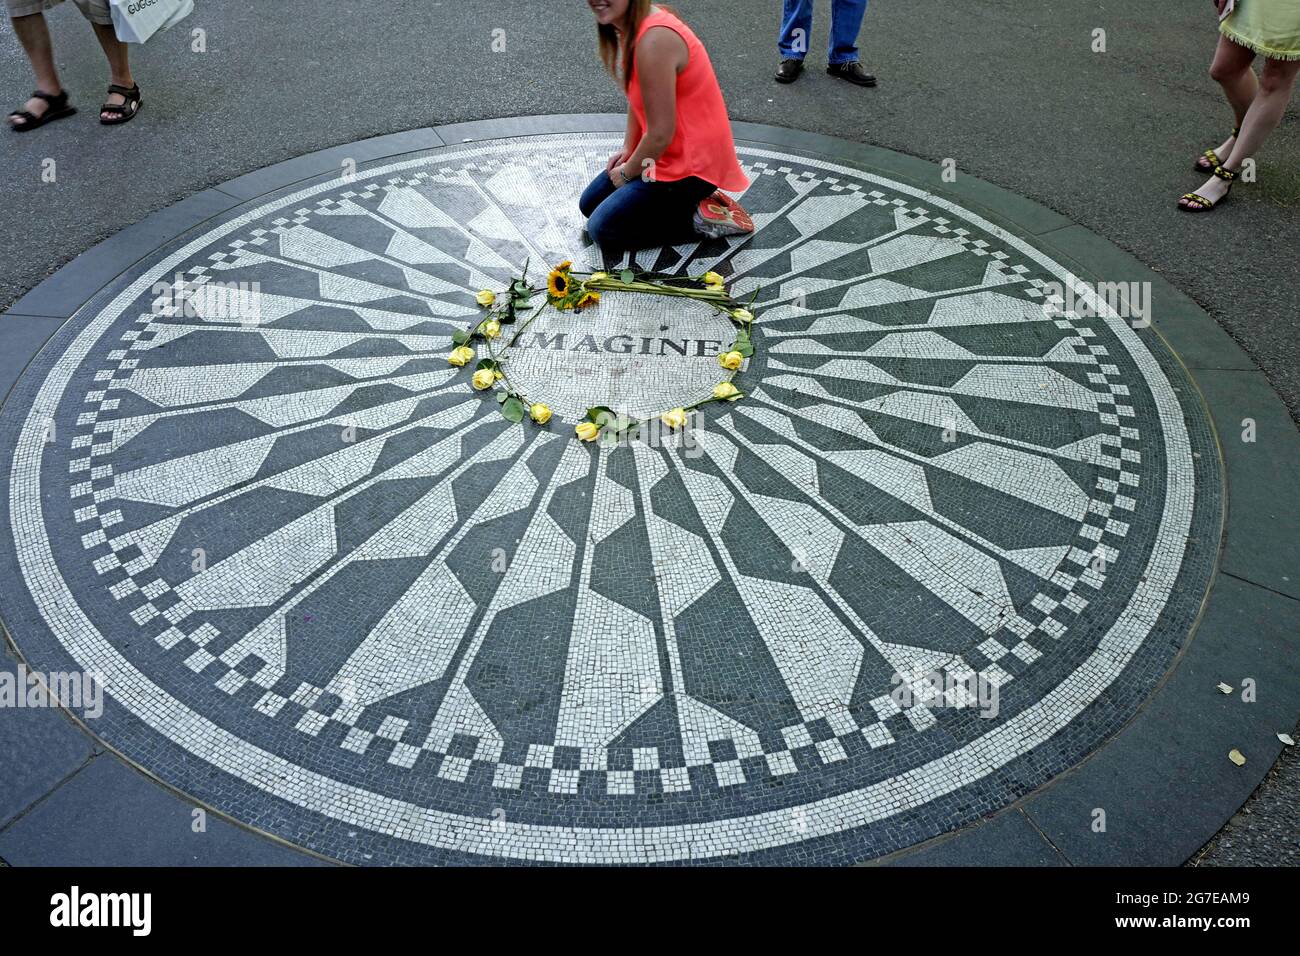 Les touristes rendent hommage à John Lennon au mémorial de Strawberry Fields, à Central Park, à New York. Banque D'Images